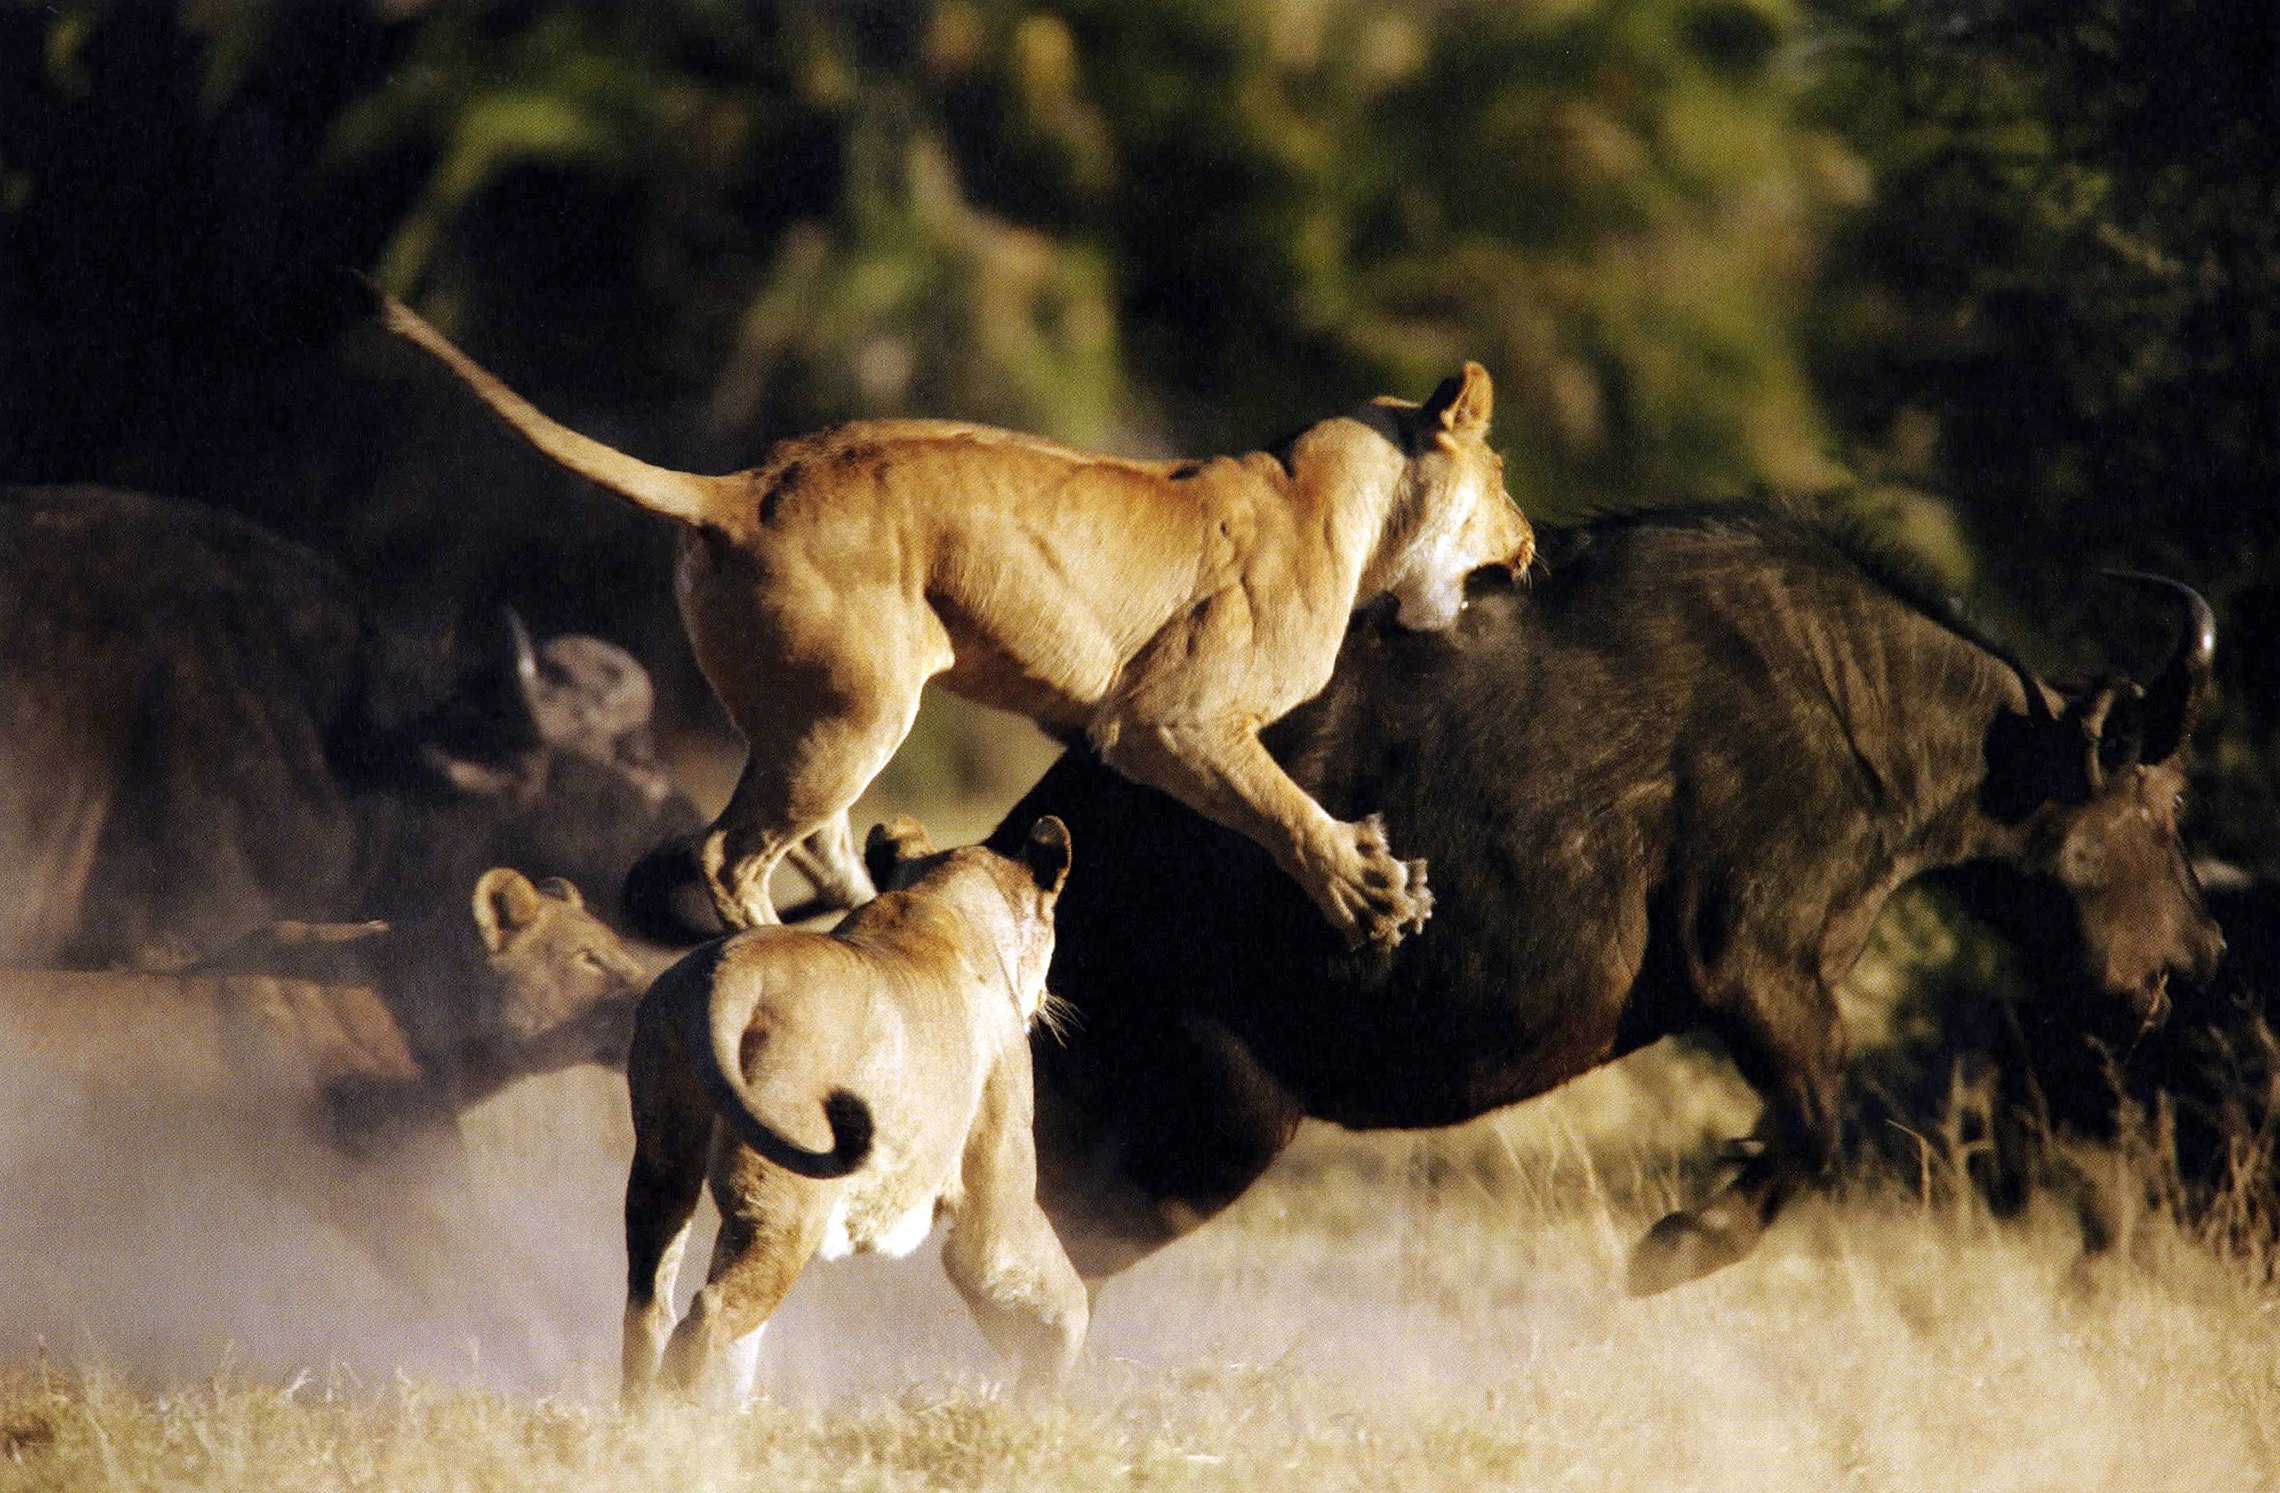 Размножение хищников. Охота Львов в дикой природе на буйволов. Львиный Прайд в дикой природе. Прайд Львов против буйвола. Прайд Львов охота на буйволов.